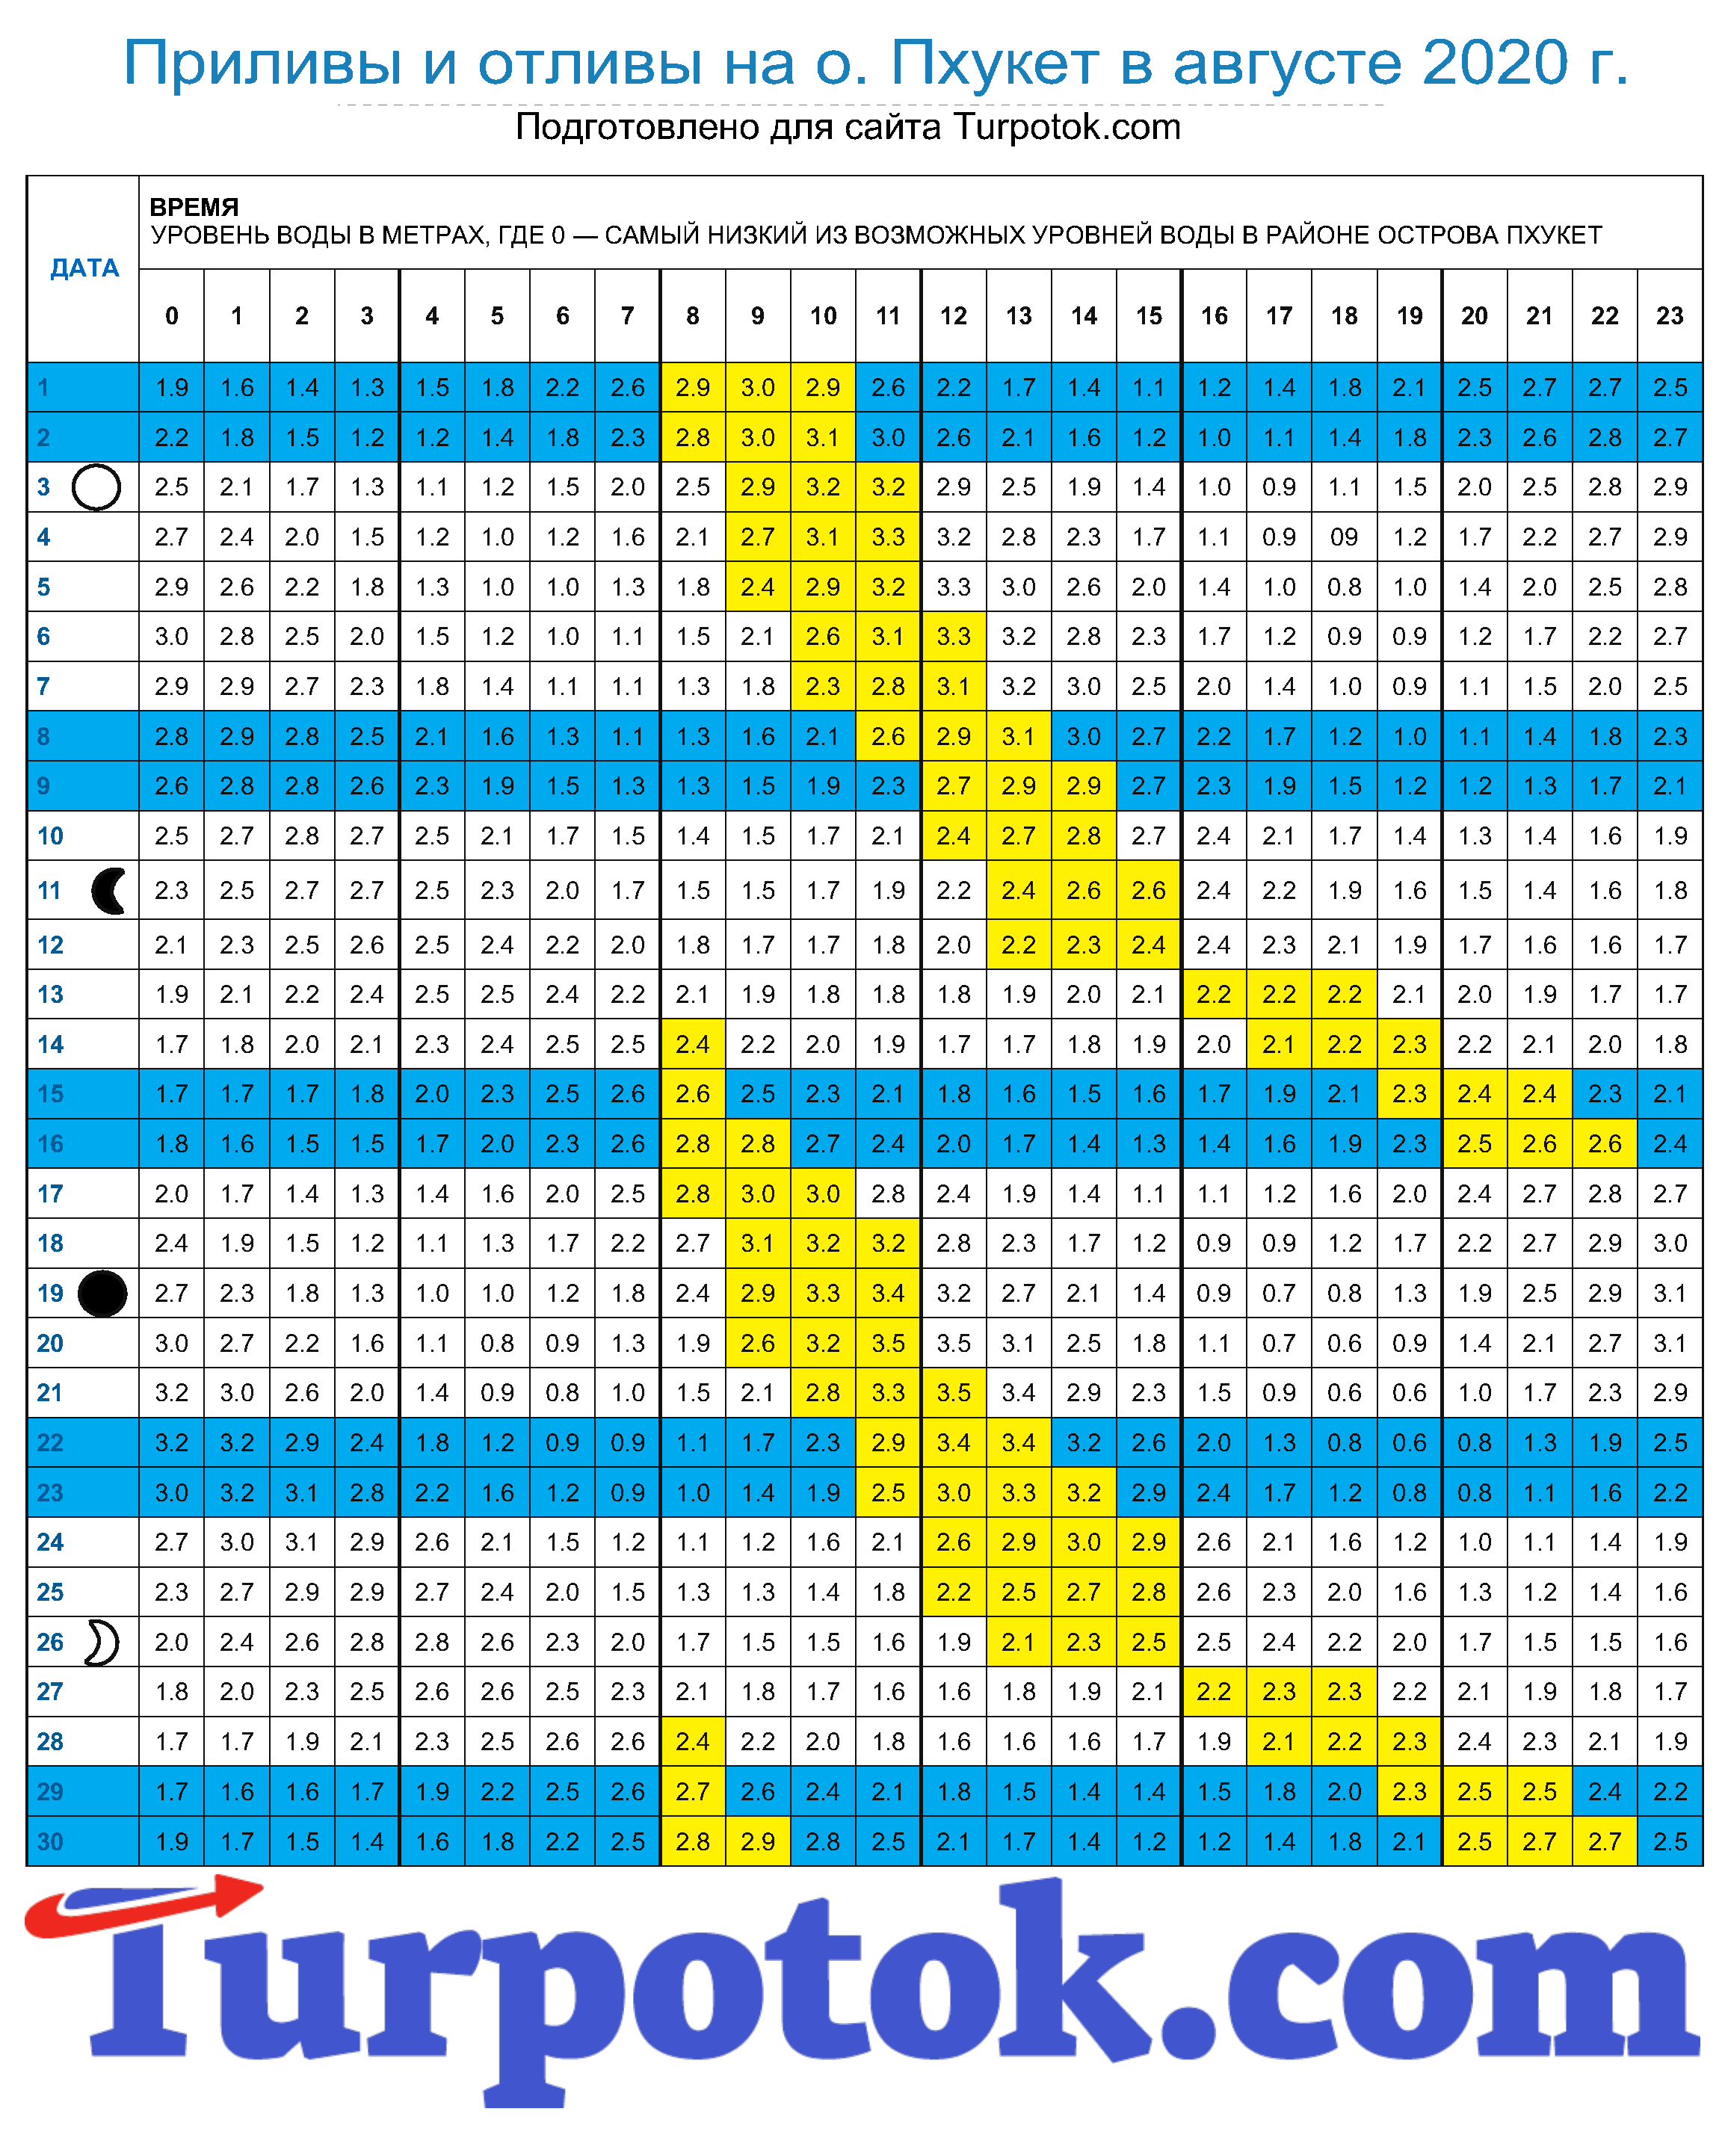 Расписание приливов на Пхукете на август 2020 г